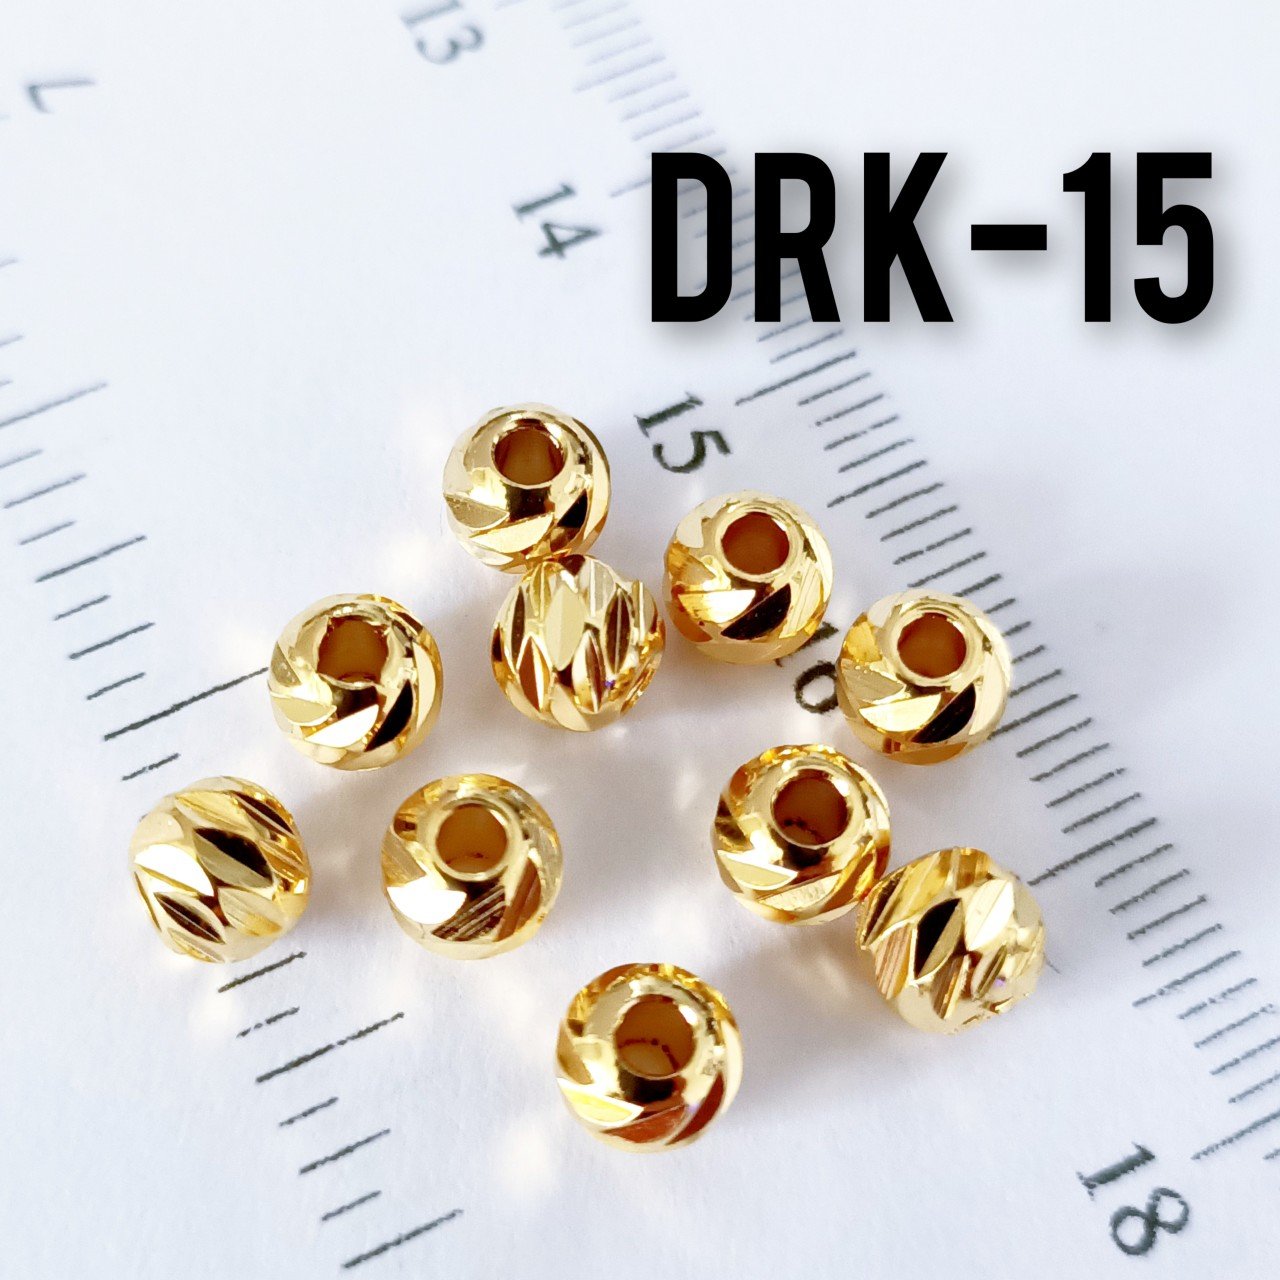 DRK-15 24 Ayar Altın Kaplama Dorika Boncuk 6 mm